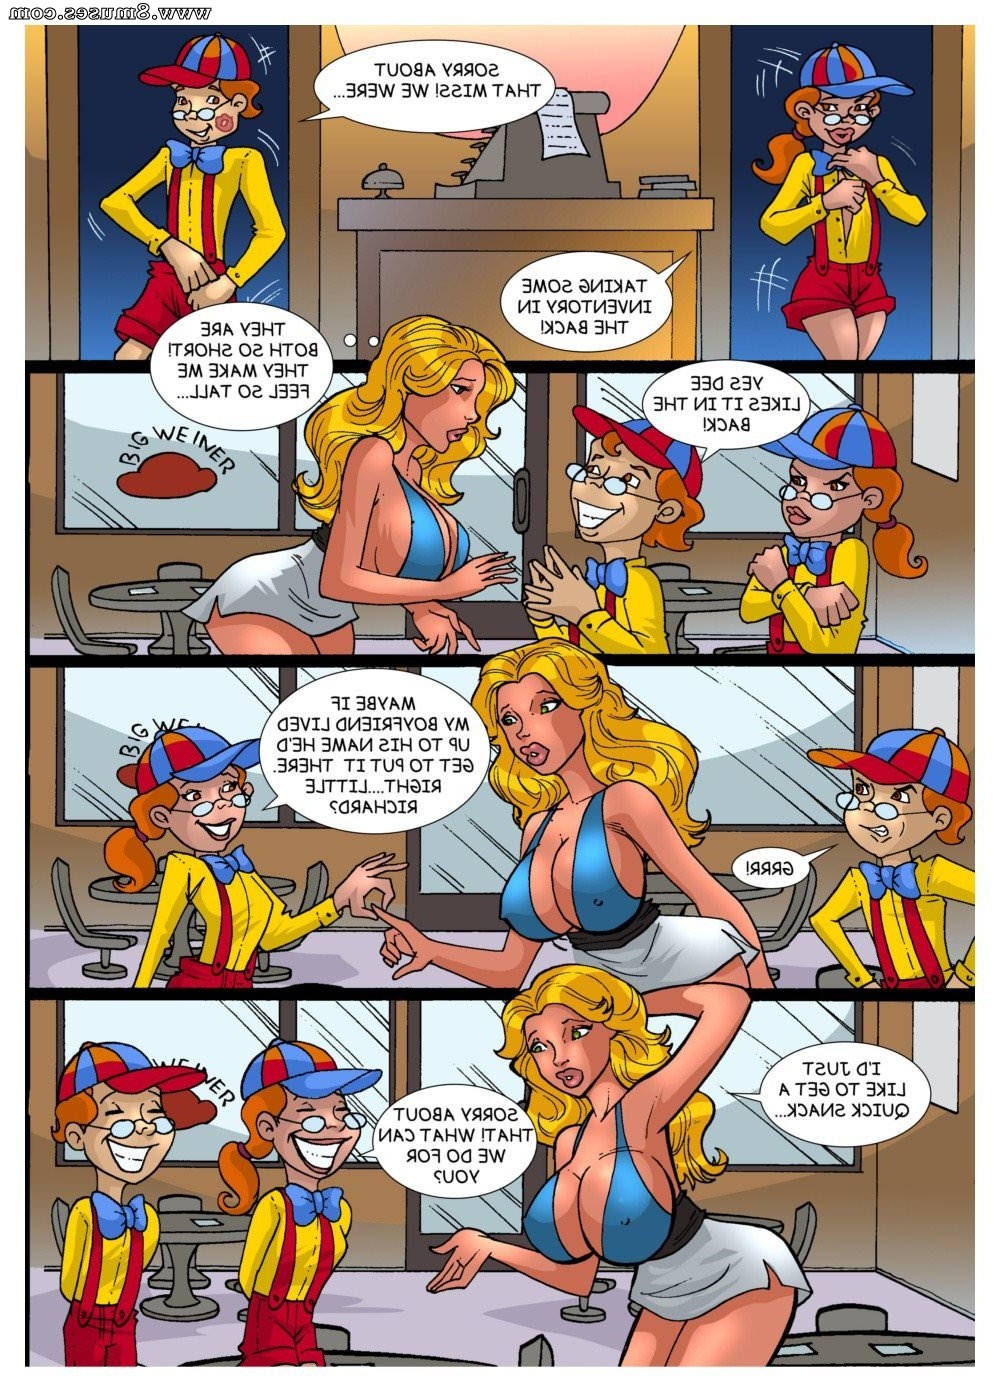 ZZZ-Comics/Alicia-Goes-Wonderland/Issue-1 Alicia_Goes_Wonderland_-_Issue_1_9.jpg